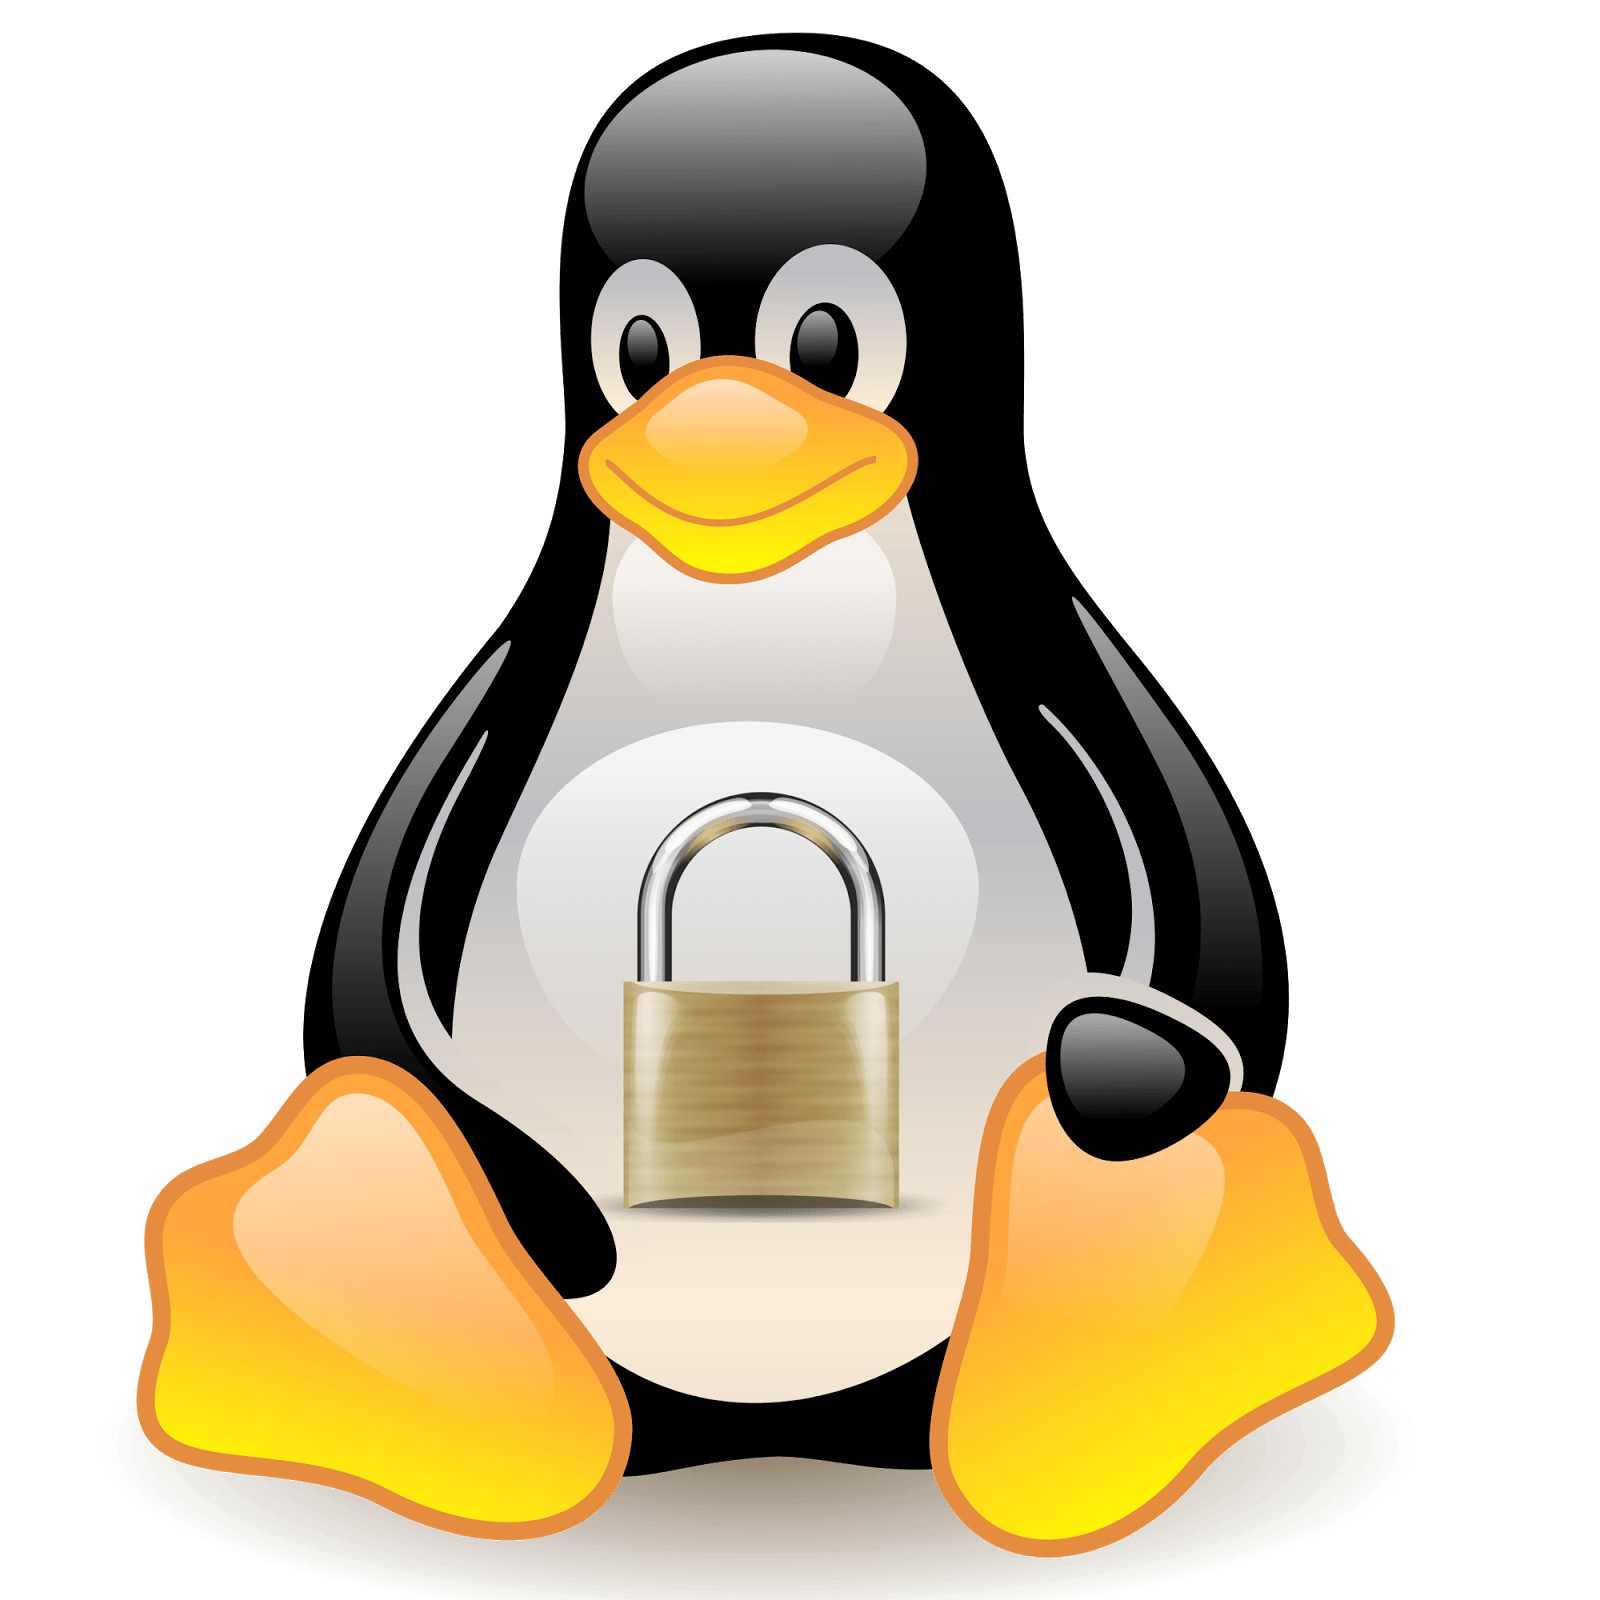 Resultado de imagen para secure linux